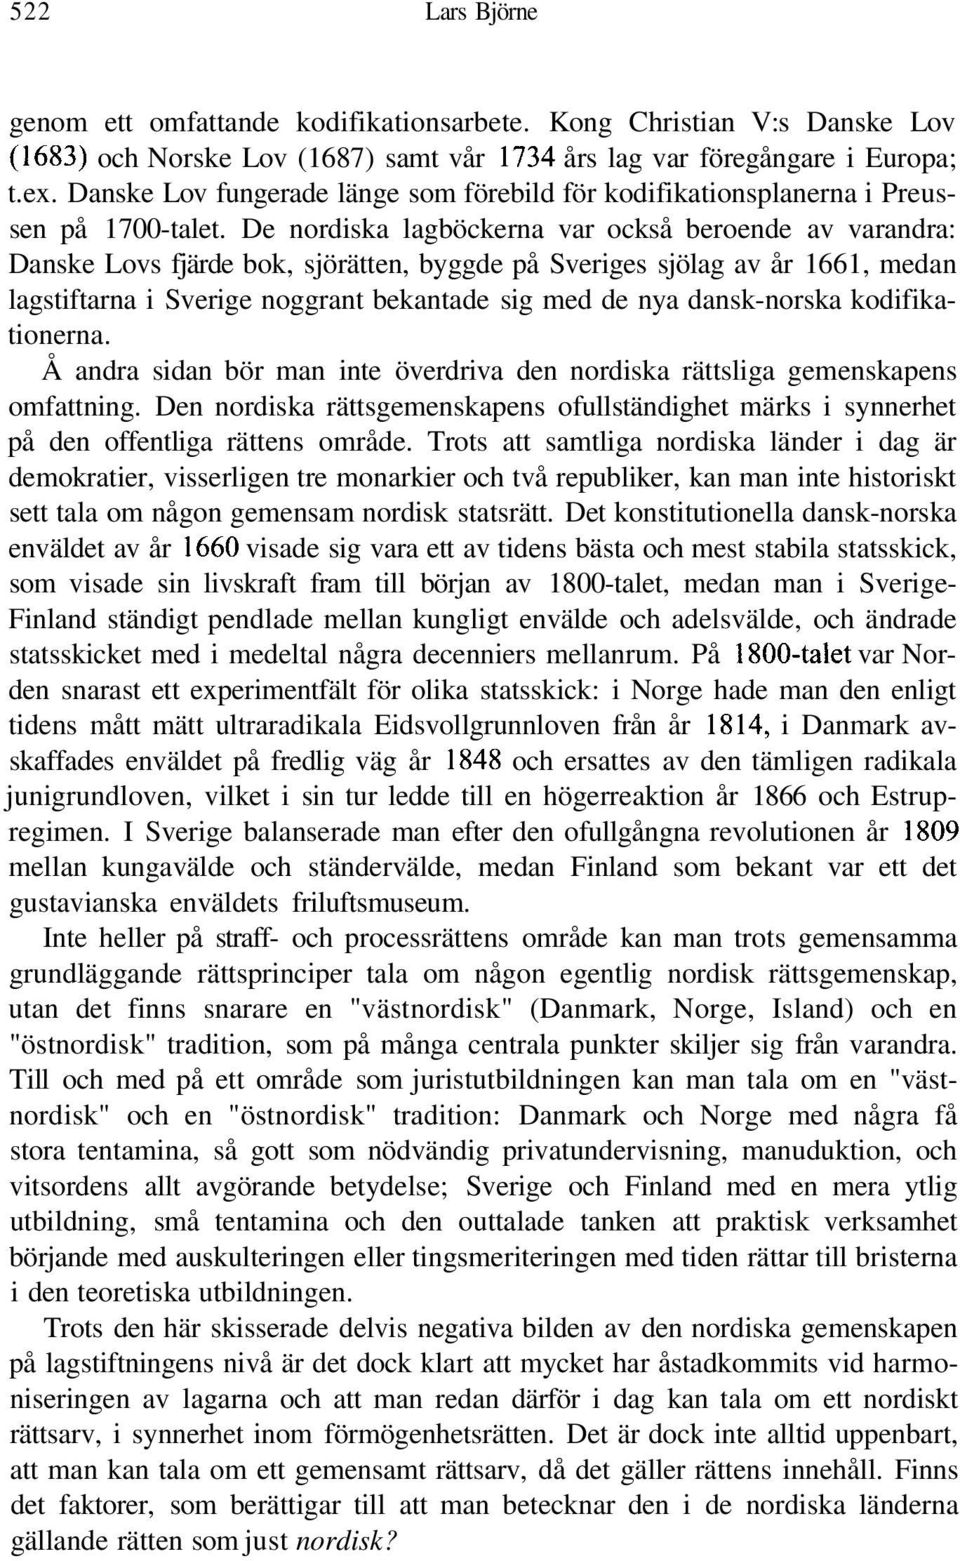 De nordiska lagböckerna var också beroende av varandra: Danske Lovs fjärde bok, sjörätten, byggde på Sveriges sjölag av år 1661, medan lagstiftarna i Sverige noggrant bekantade sig med de nya